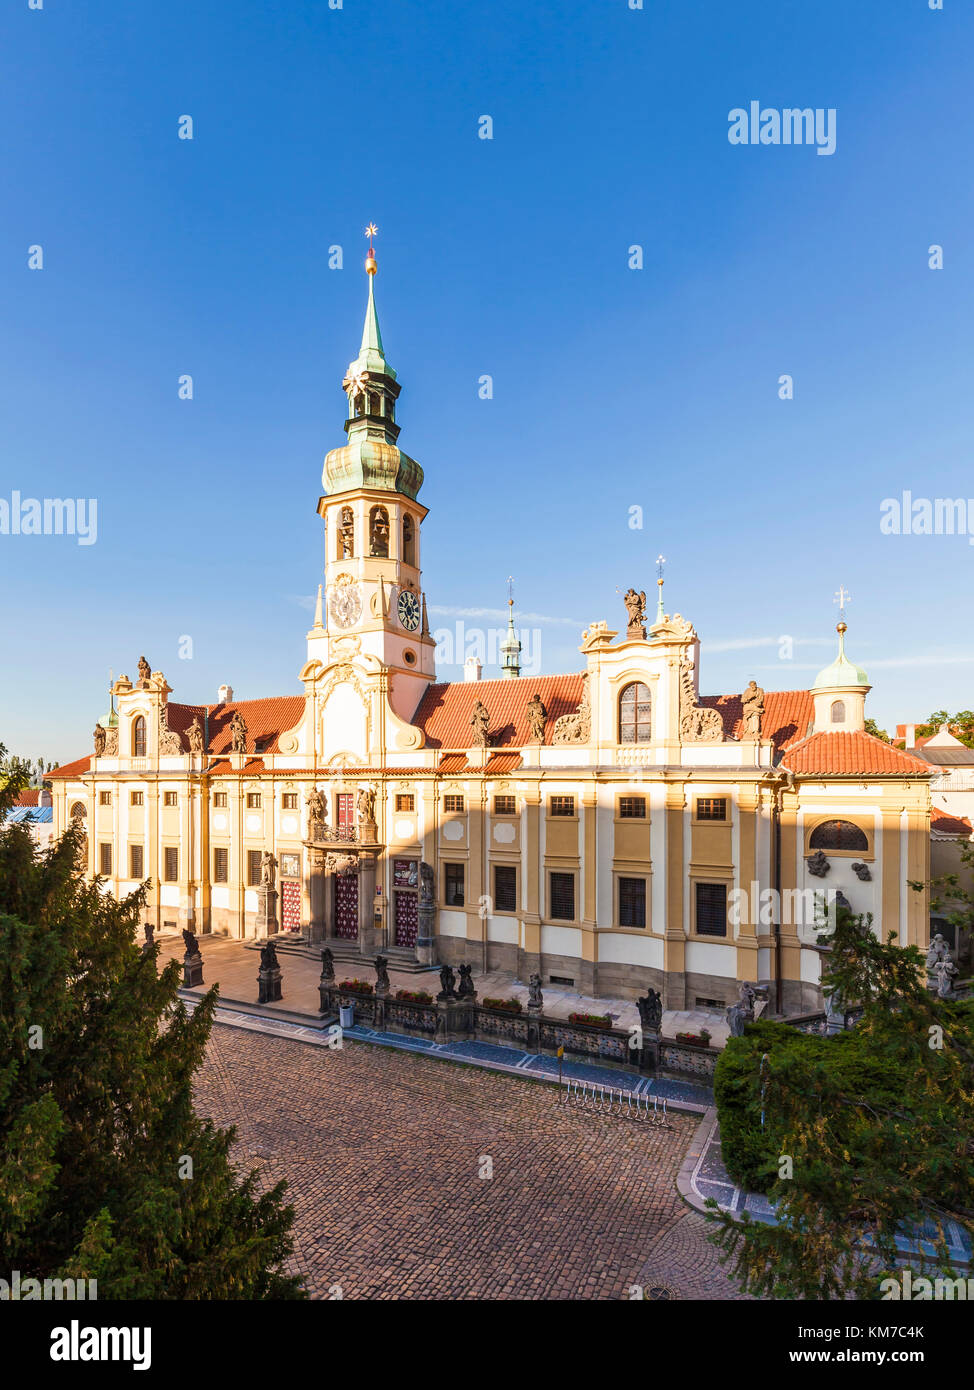 Tschechien, Prag, Hradschin, Loreto, Loretoheiligtum, Kapuzinerkloster, Wallfahrtsort Foto de stock